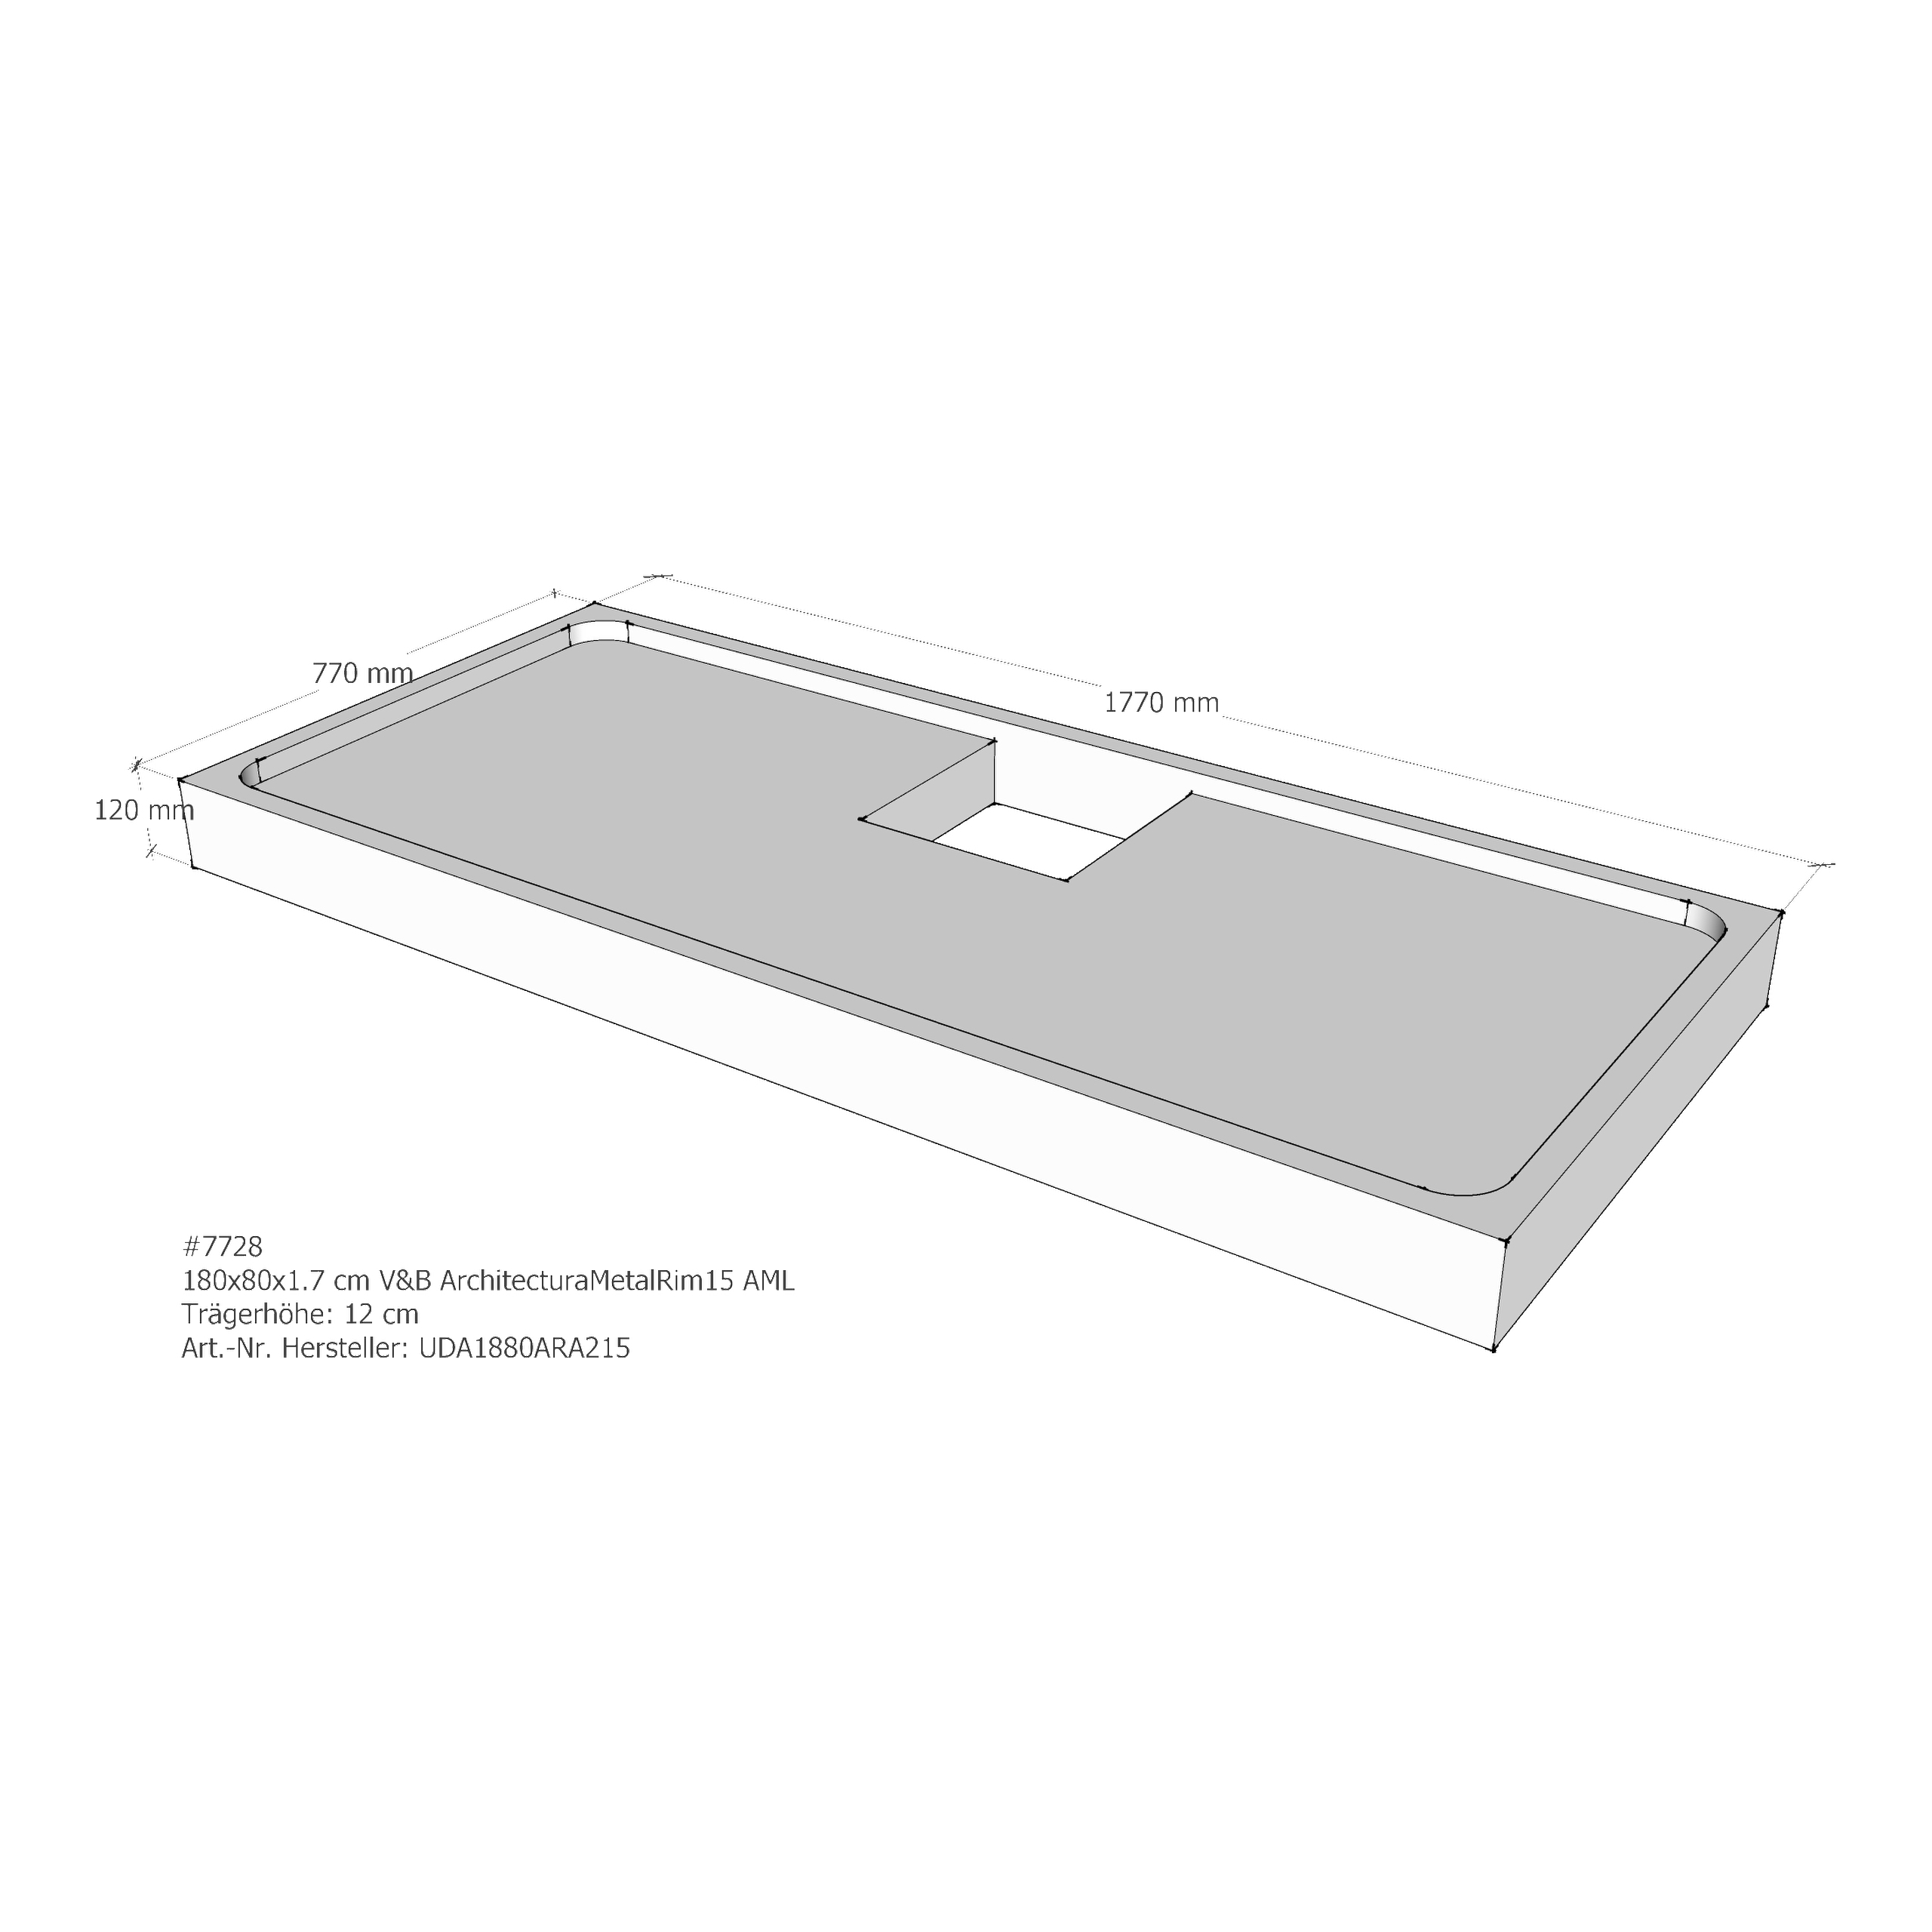 Duschwannenträger für Villeroy & Boch Architectura MetalRim 180 × 80 × 1,7 cm